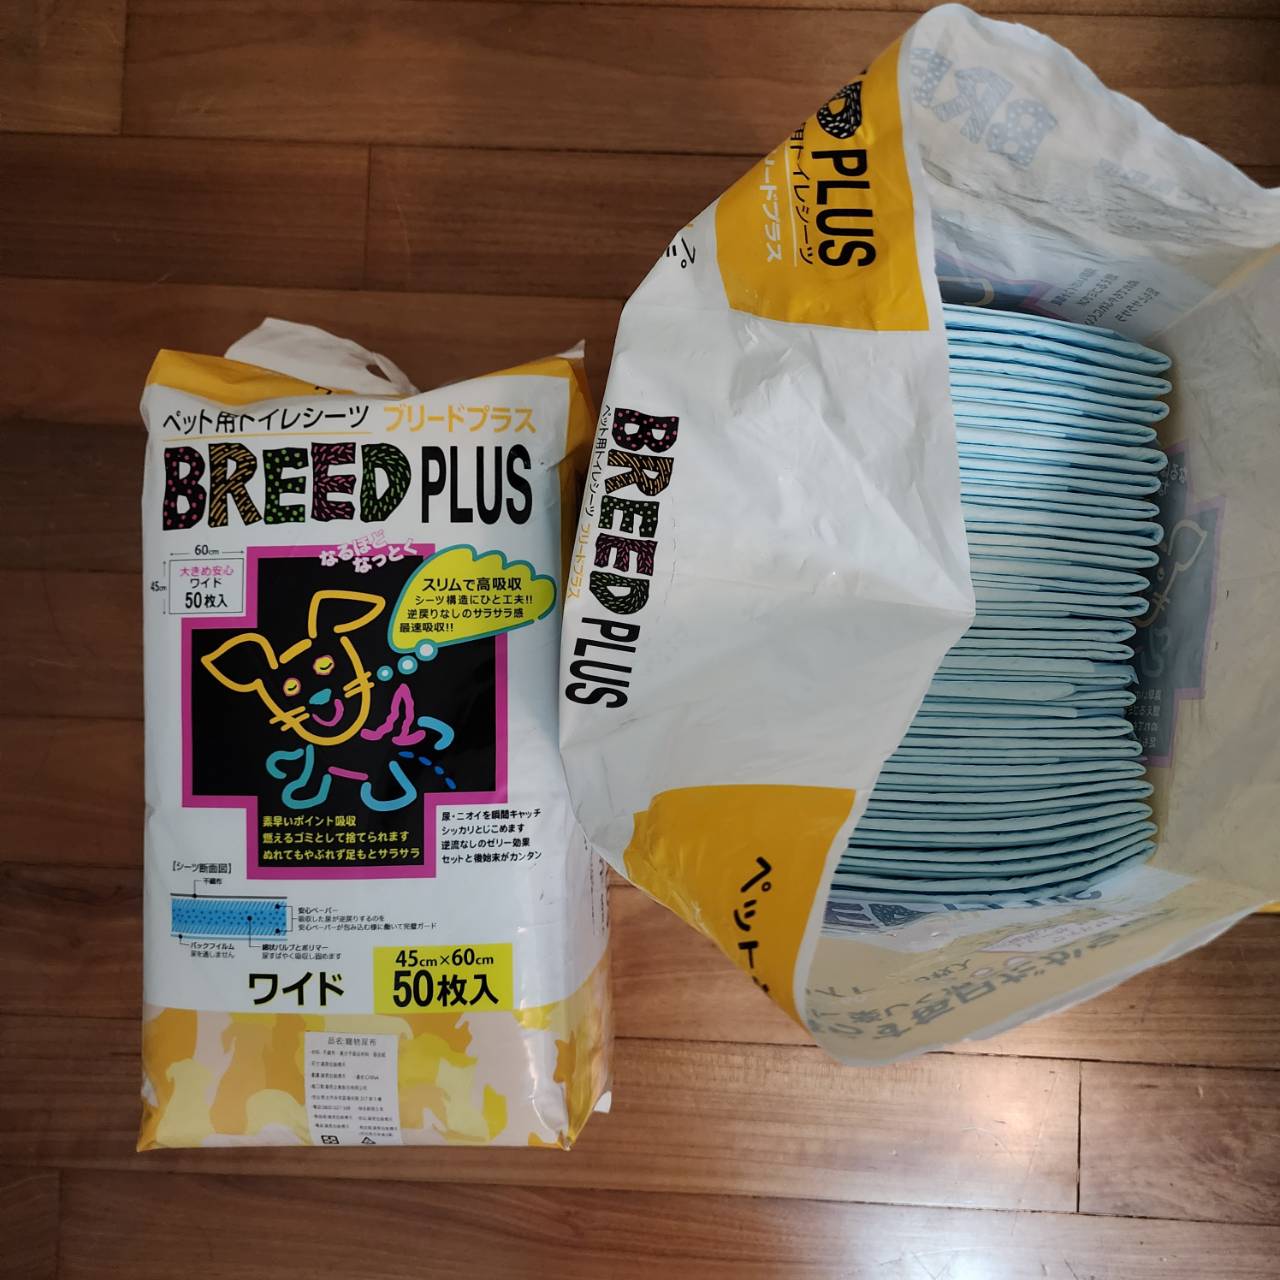 [交易/買賣] 高雄 BREED PLUS 寵物尿布片 45x60cm